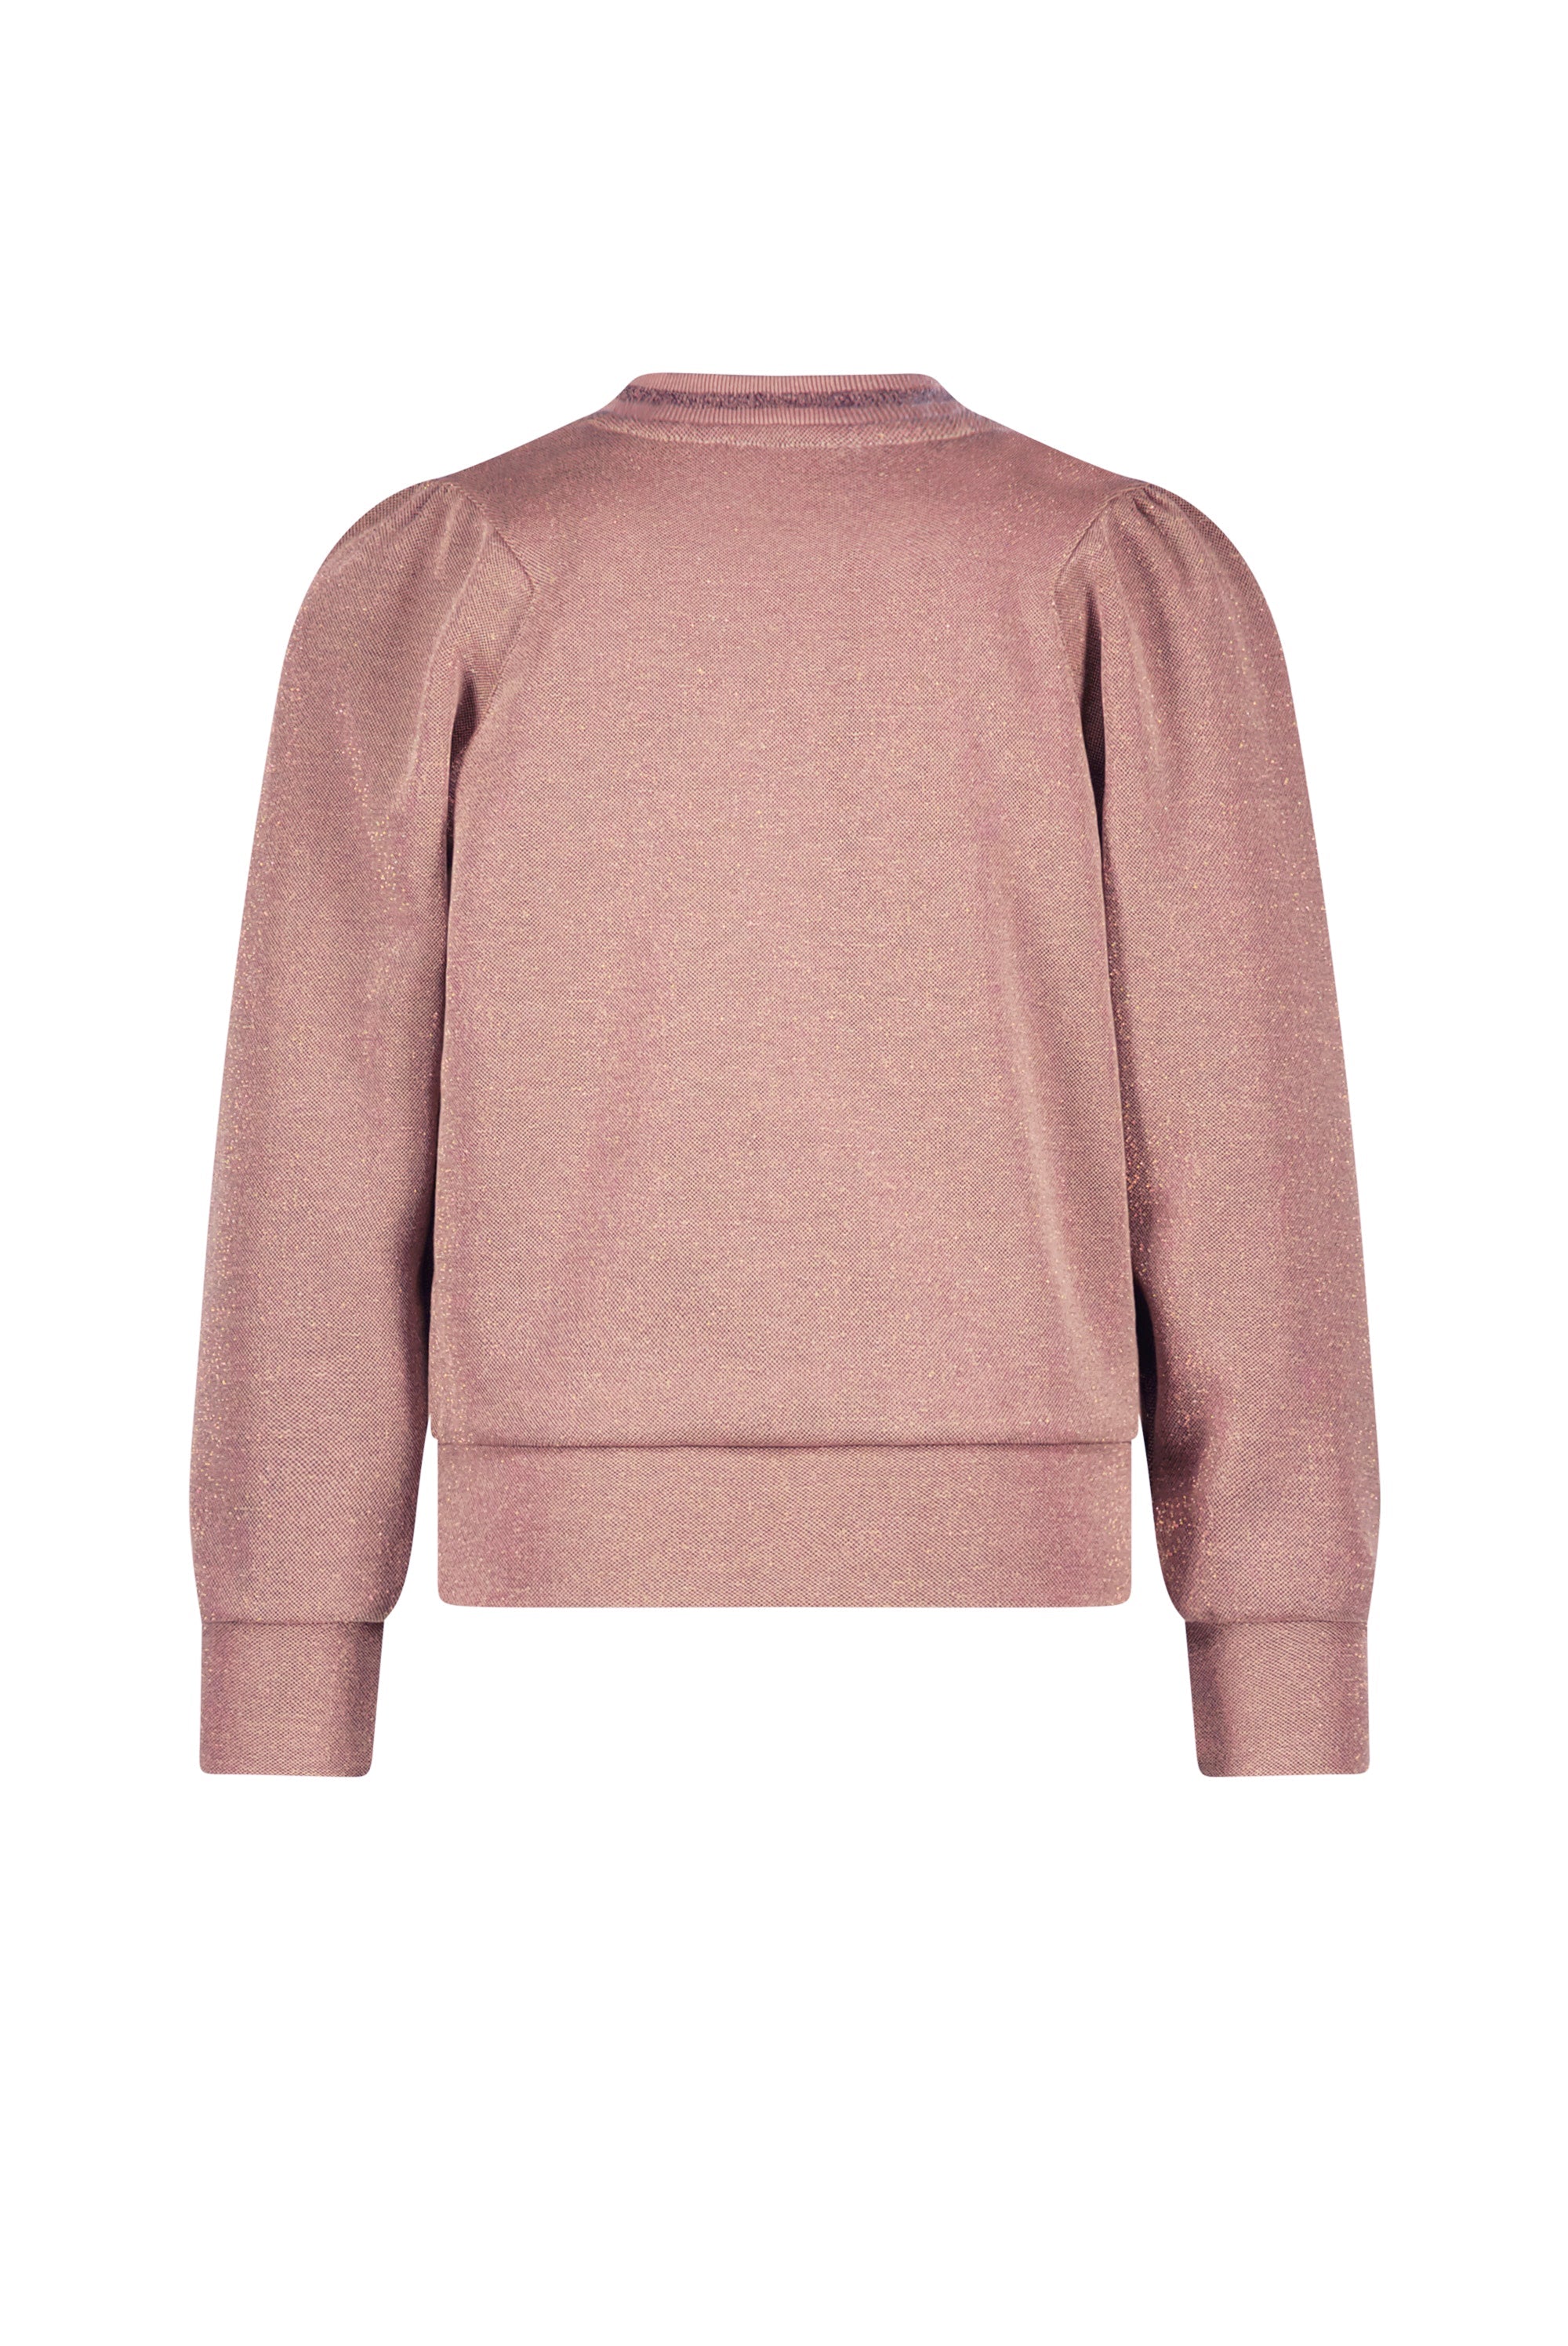 Meisjes Kilan lurex pique sweater long sleeve with puffed sleeves van NoNo in de kleur Rosy Ginger in maat 134-140.